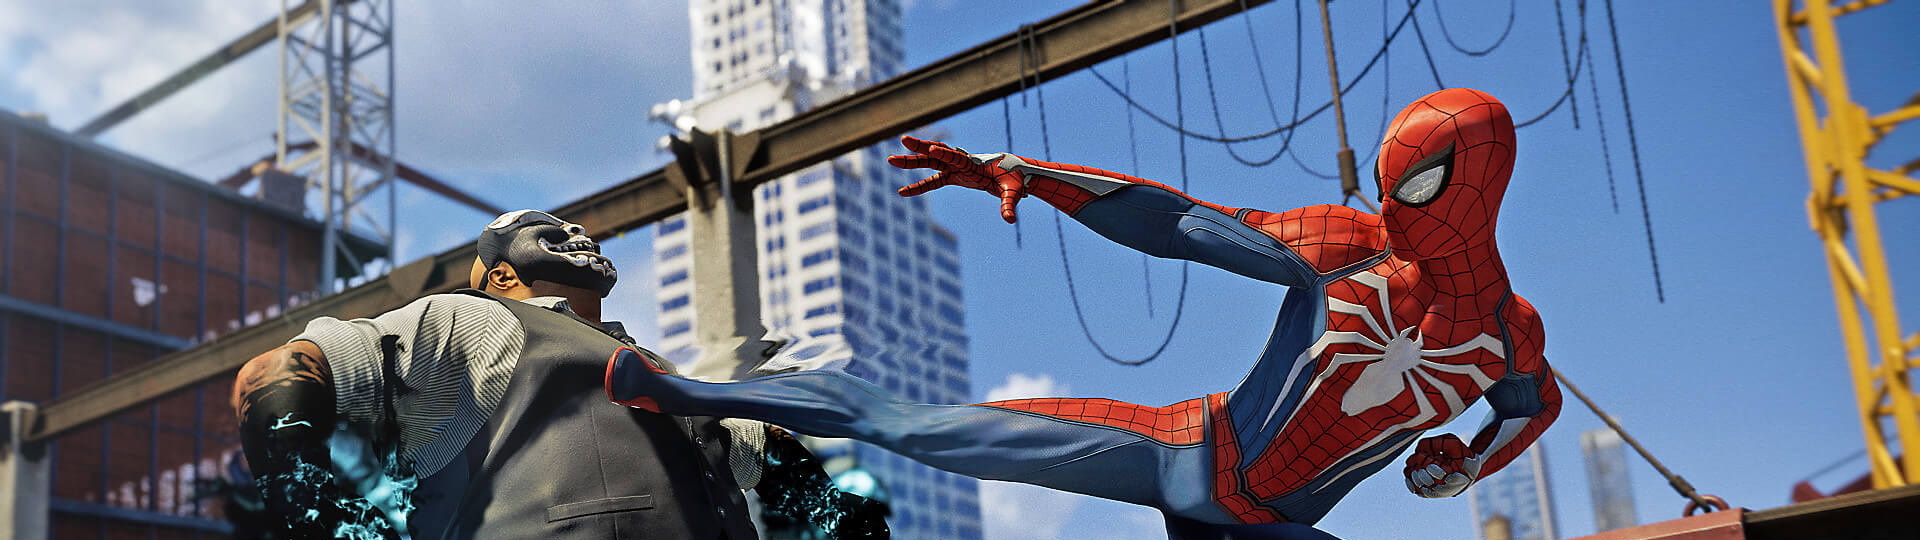 Pracuje se na dalším Spider-Manovi? | Spekulace